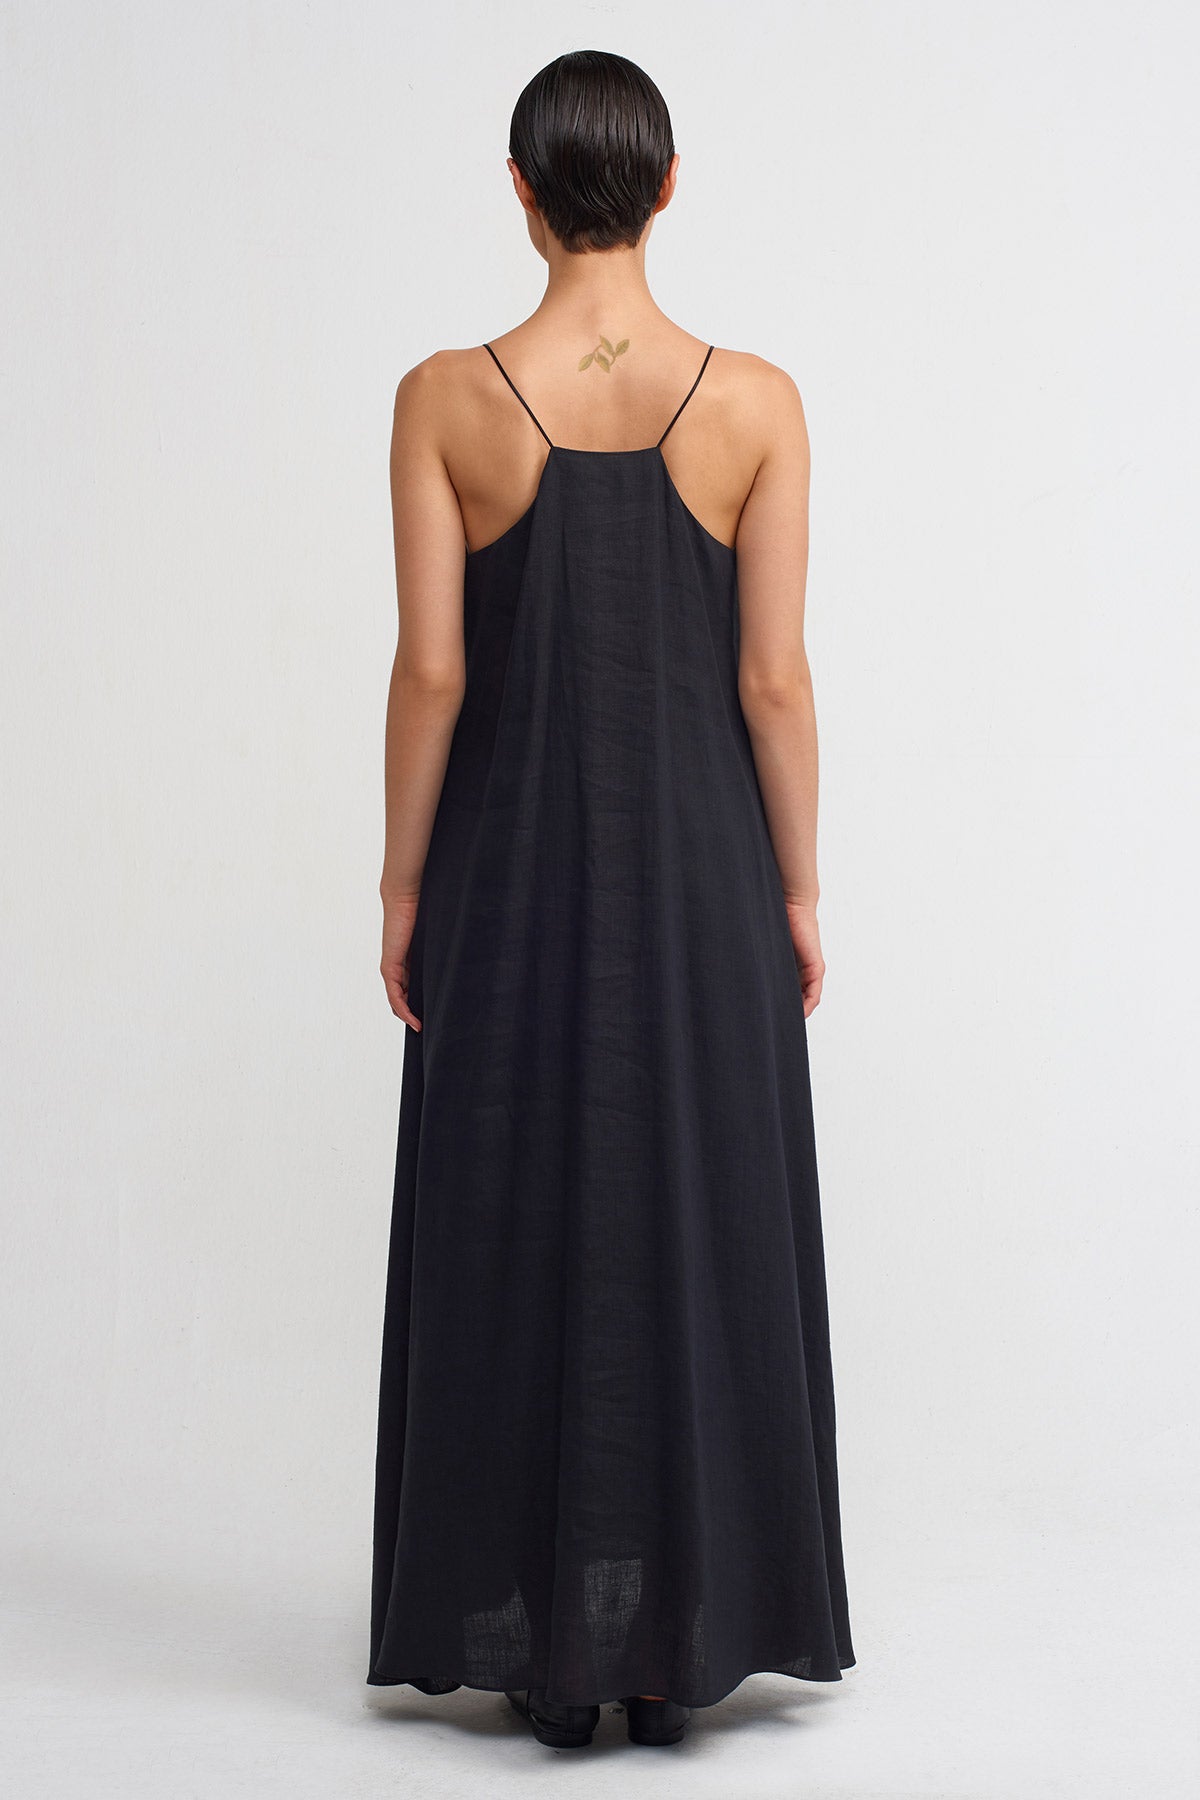 Black Spaghetti Strap Linen Long Dress-Y244014010